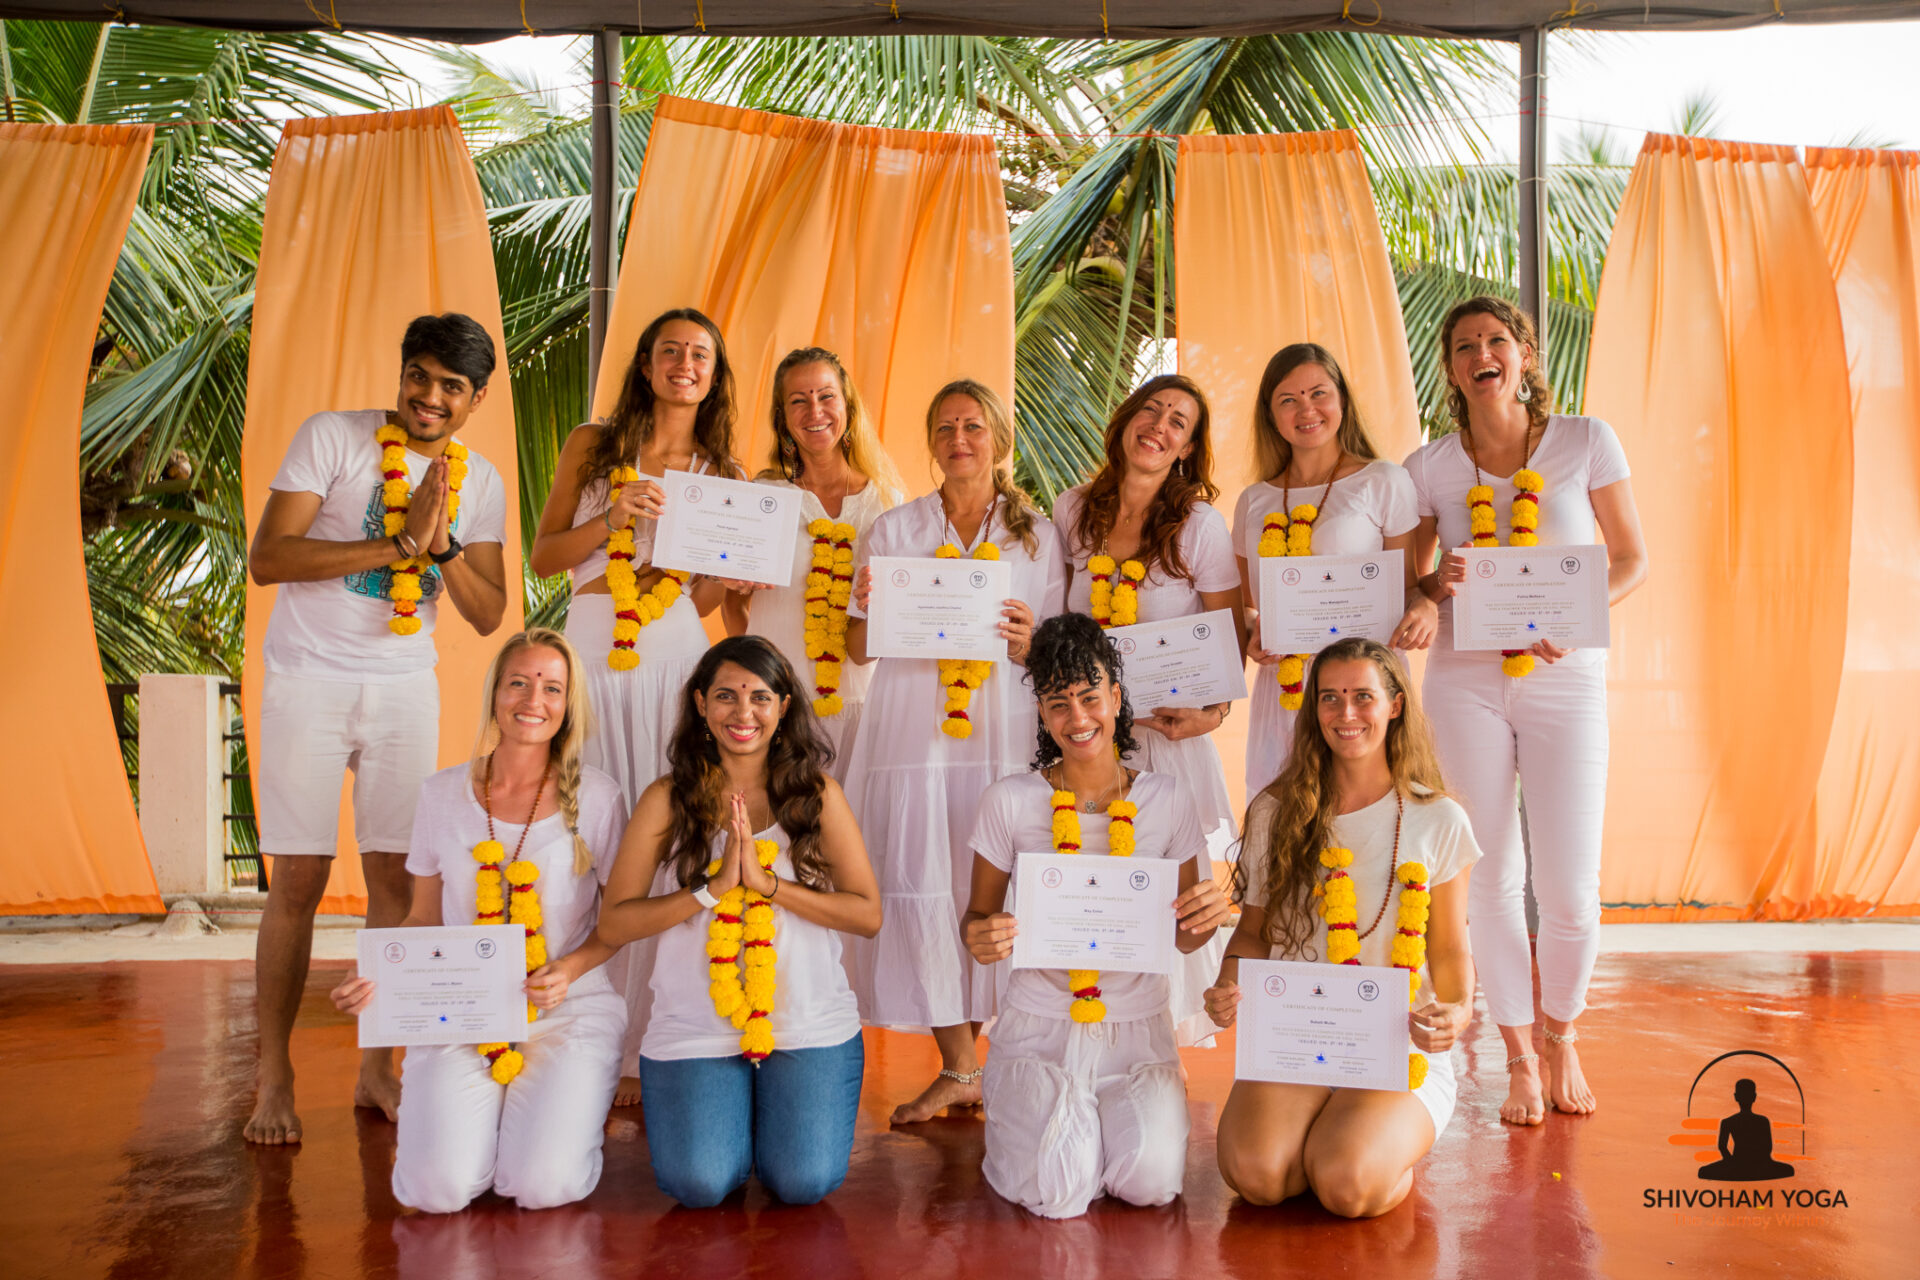 Shivoham Yoga School in Goa, India - 2022